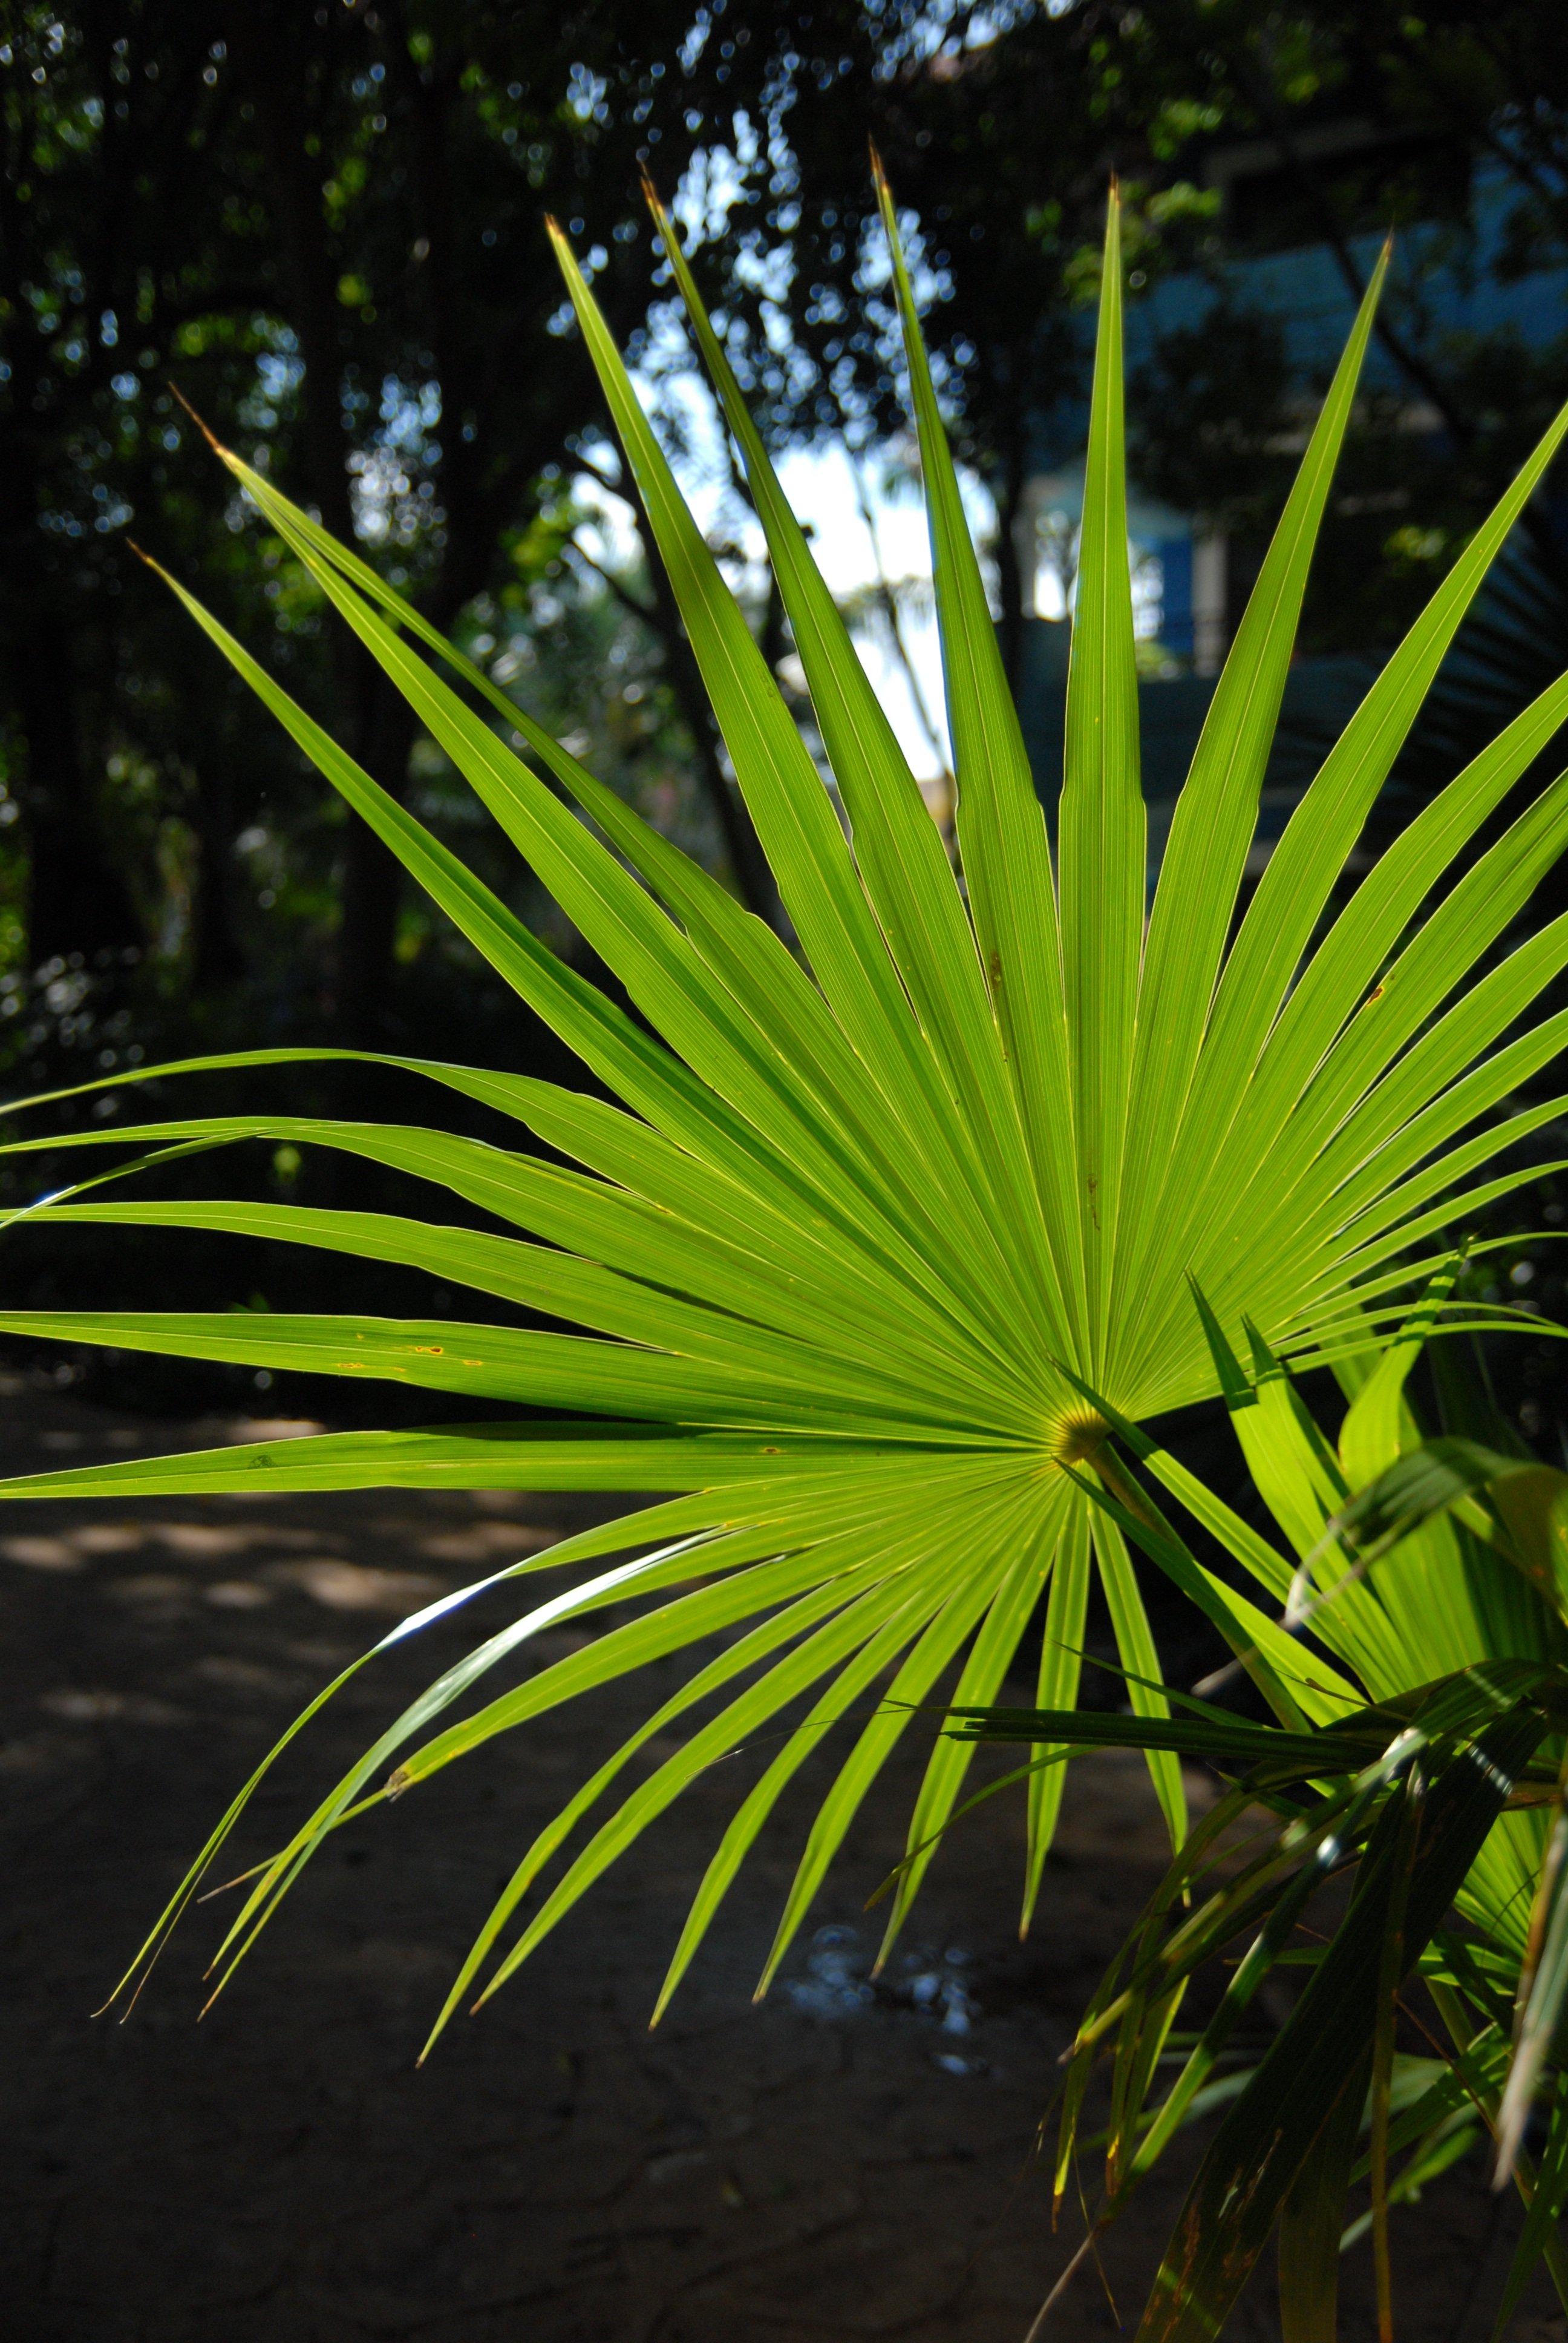 Tropical plant. Пальма сенореа. Пальма остролистная. Ливингстона Пальма. Тропическая Пальма с перистыми листьями.